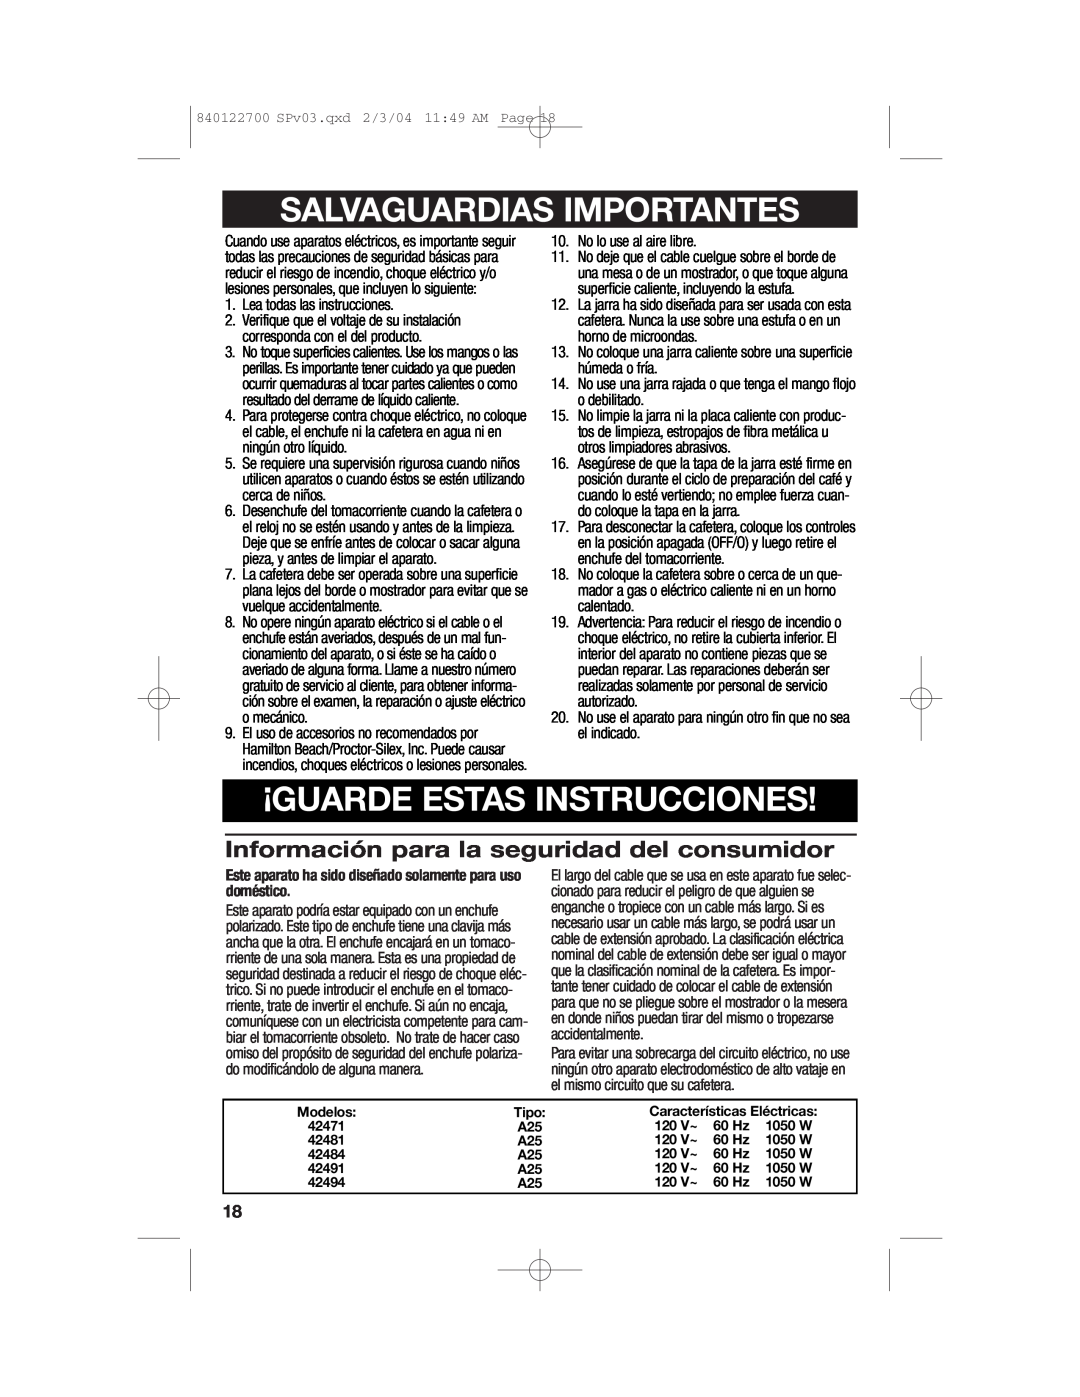 Hamilton Beach Coffemaker manual Salvaguardias Importantes, ¡Guarde Estas Instrucciones, Modelos, Tipo, 120 V~, 1050 W 